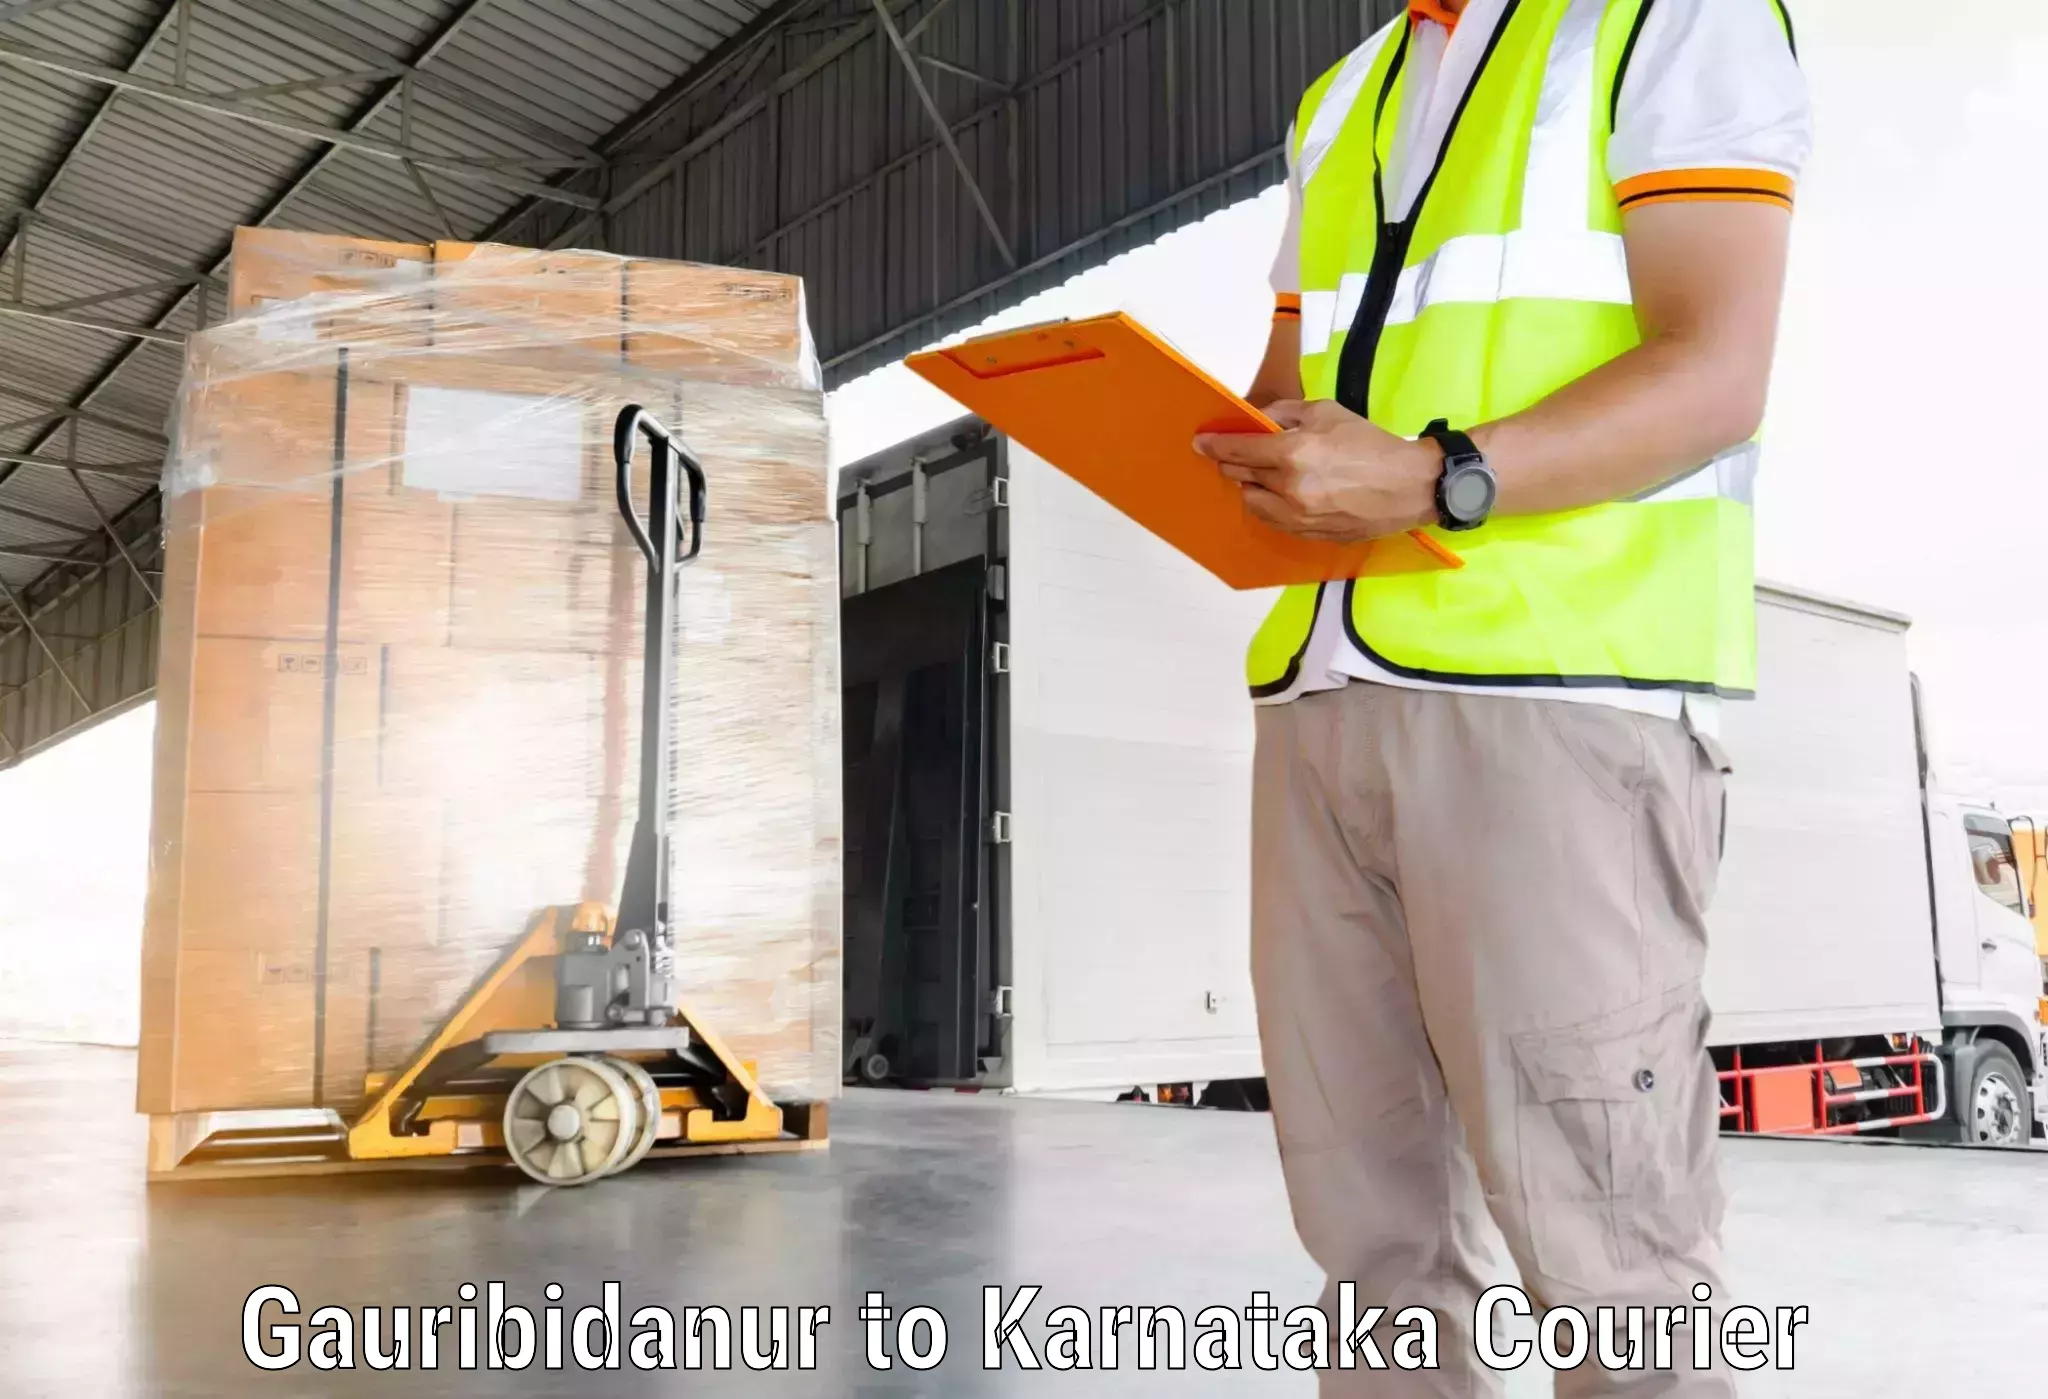 Courier service comparison Gauribidanur to Heggadadevankote HD Kote